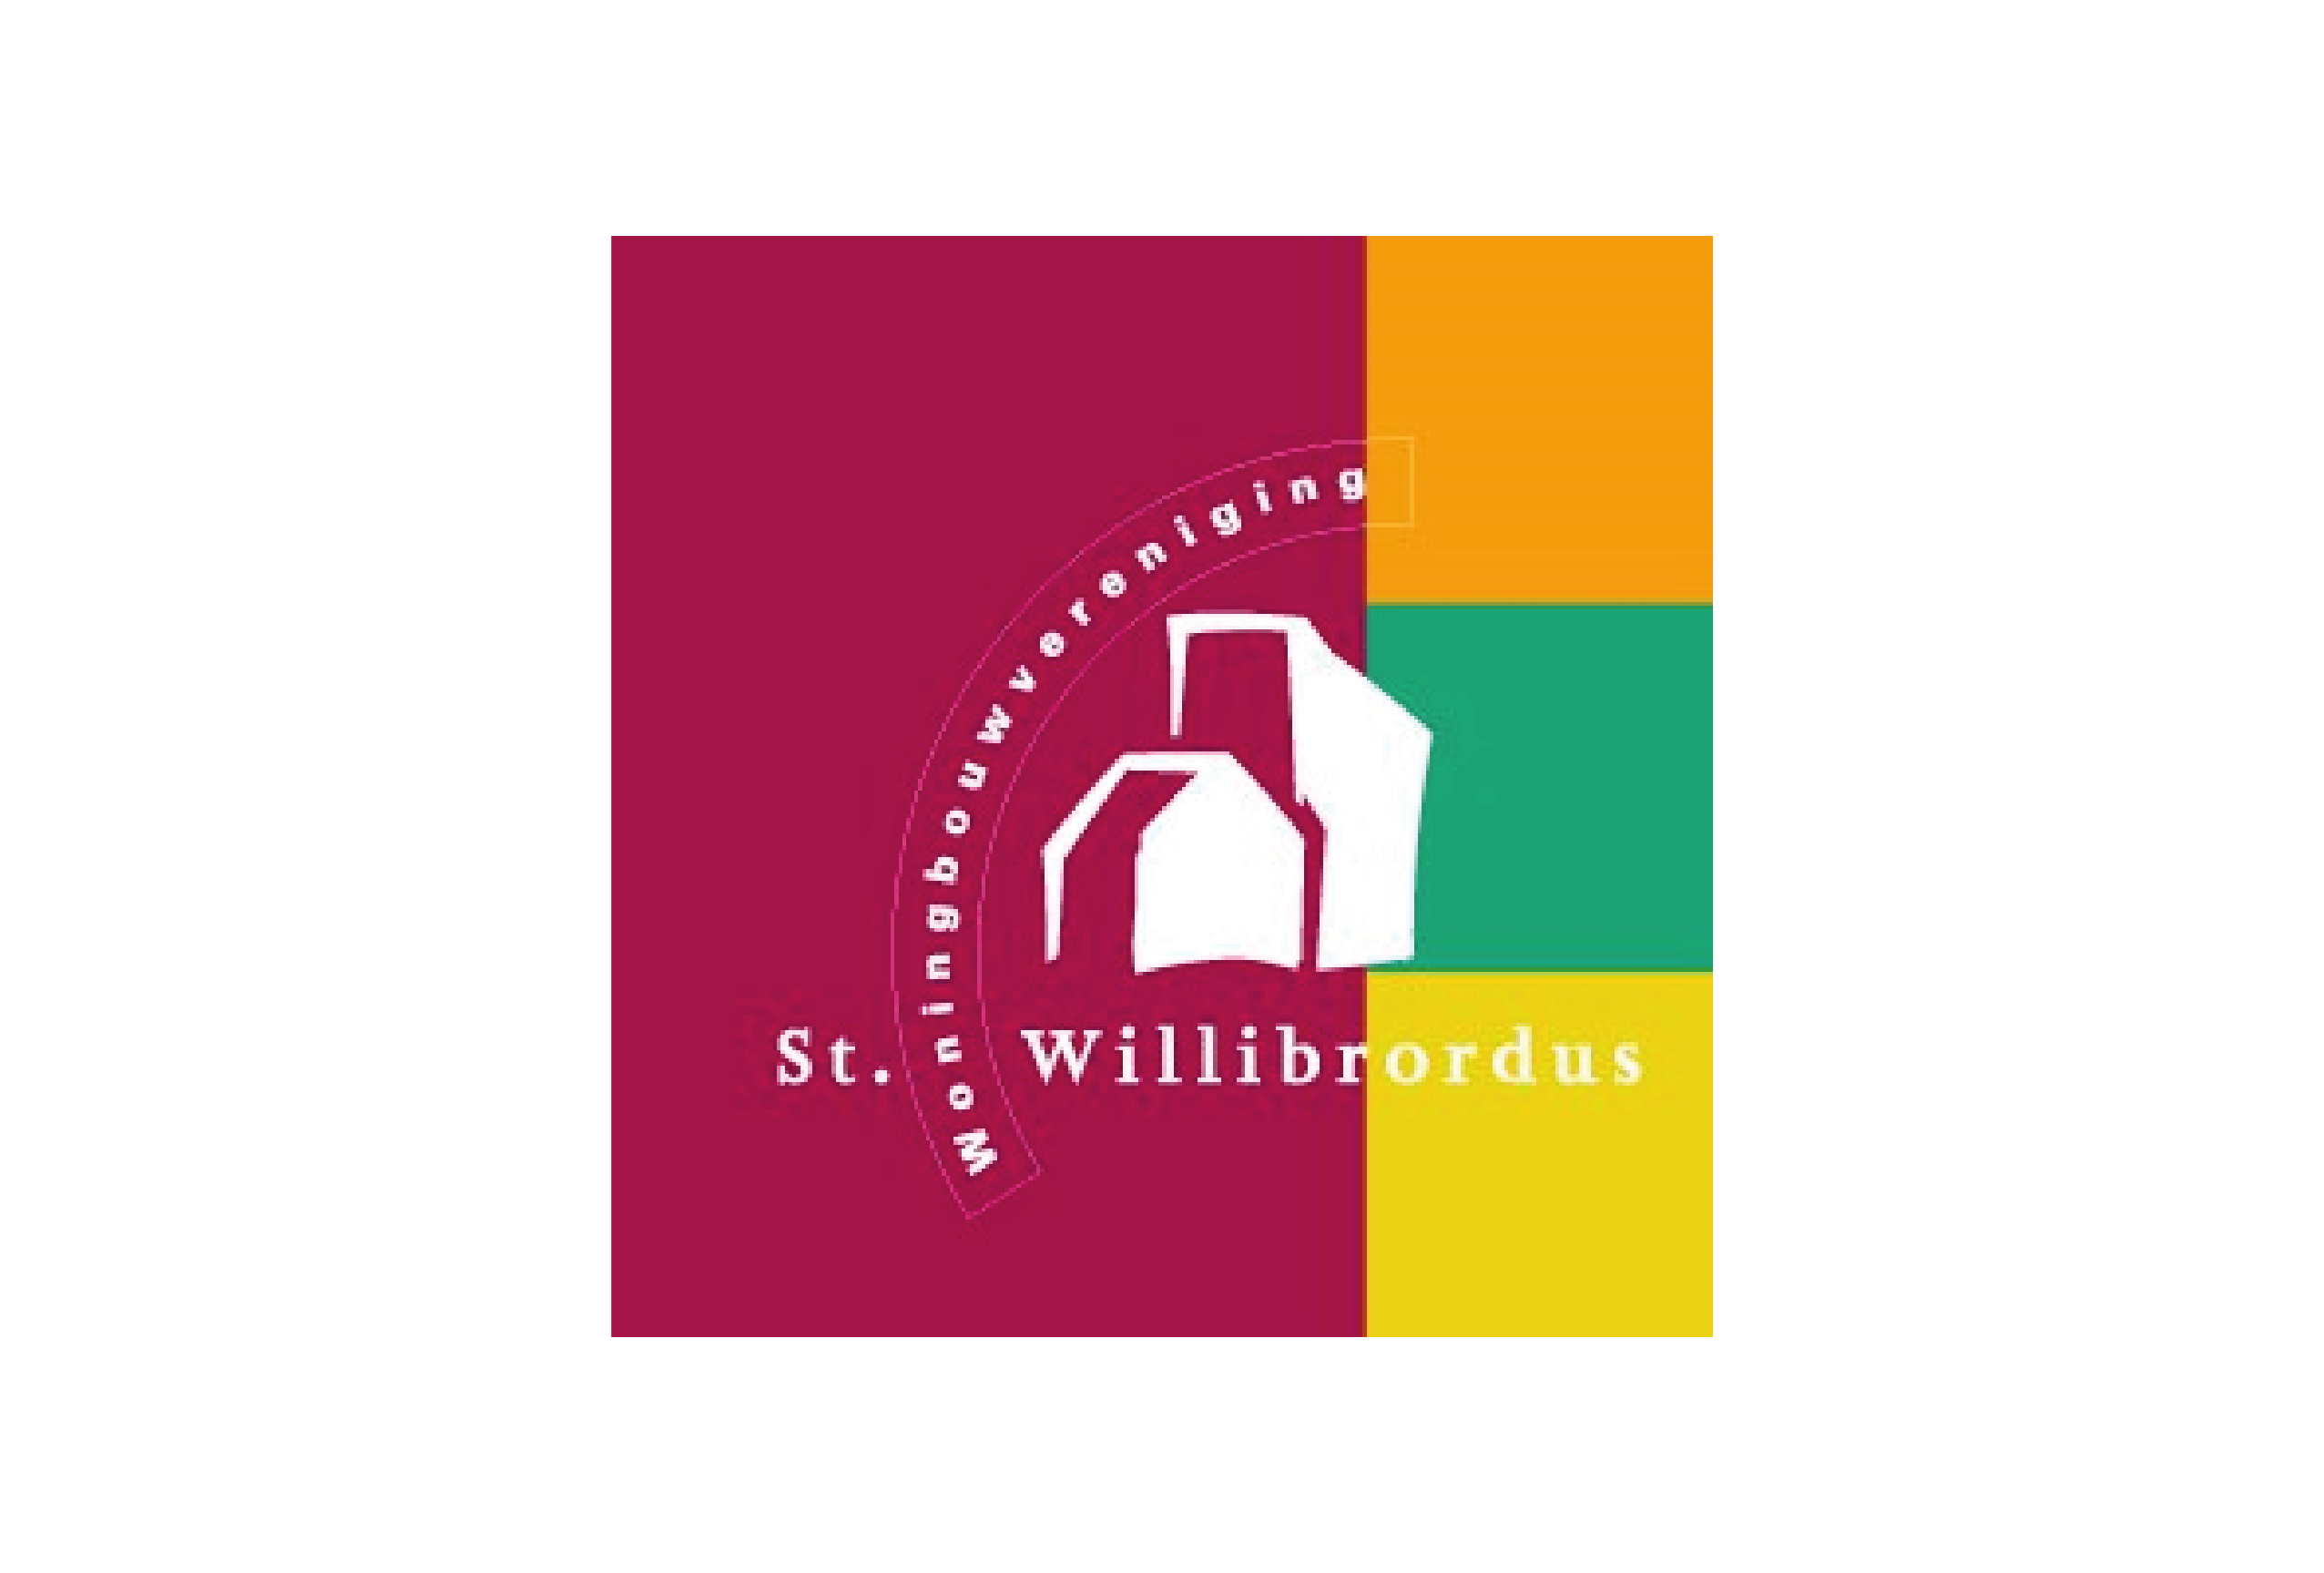 St. Willibrordus